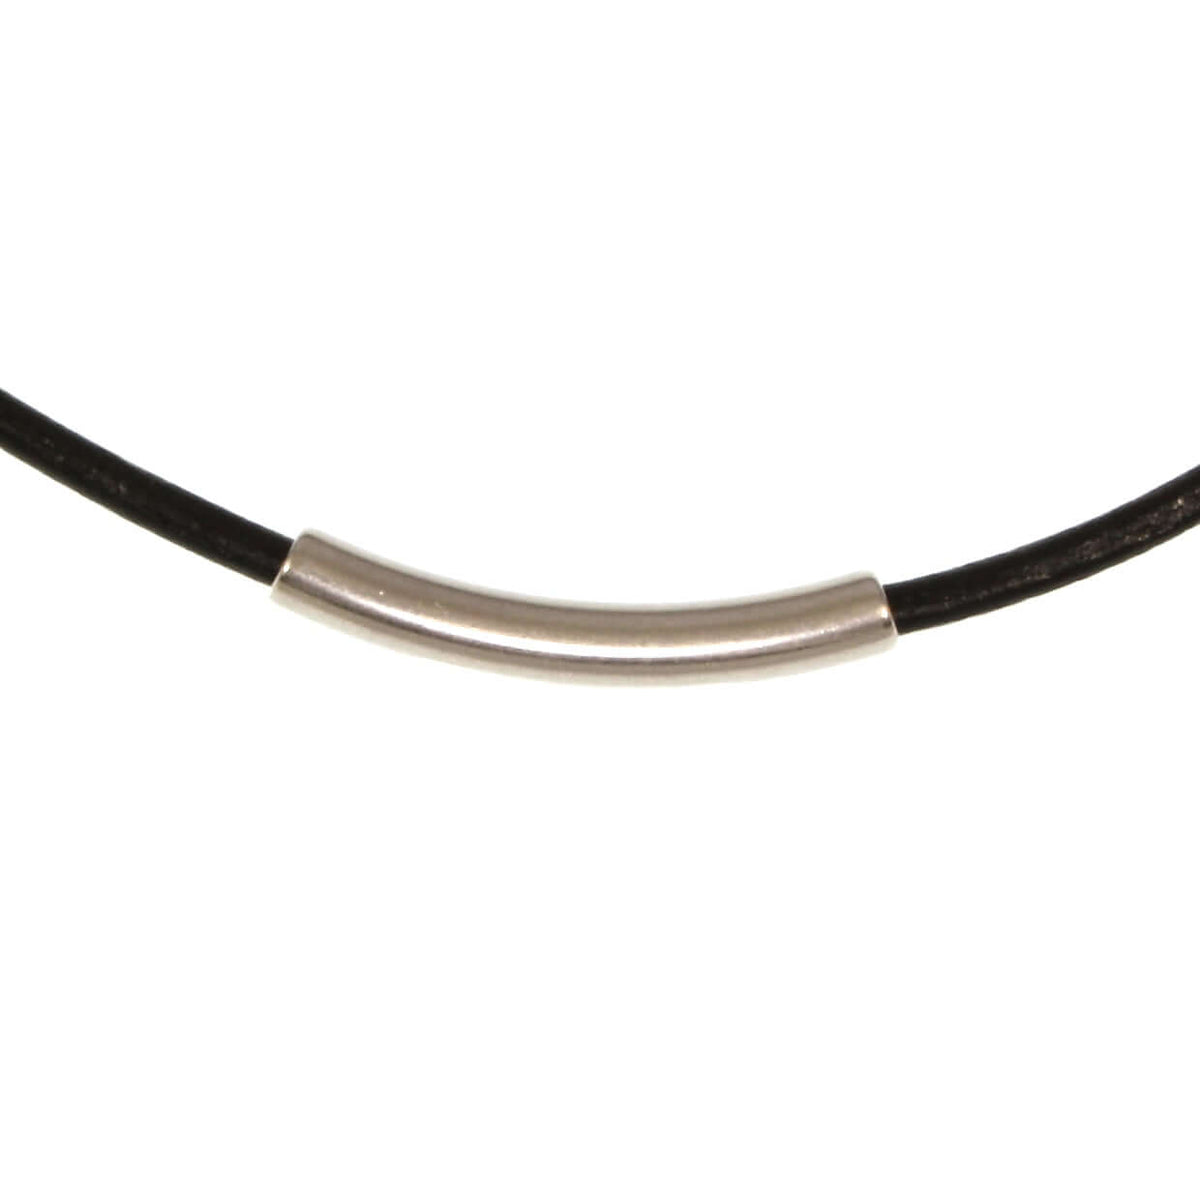 Damen-Leder-halskette-curve-Schwarz-riemen-massiv-Edelstahlverschluss-detail-wavepirate-shop-r